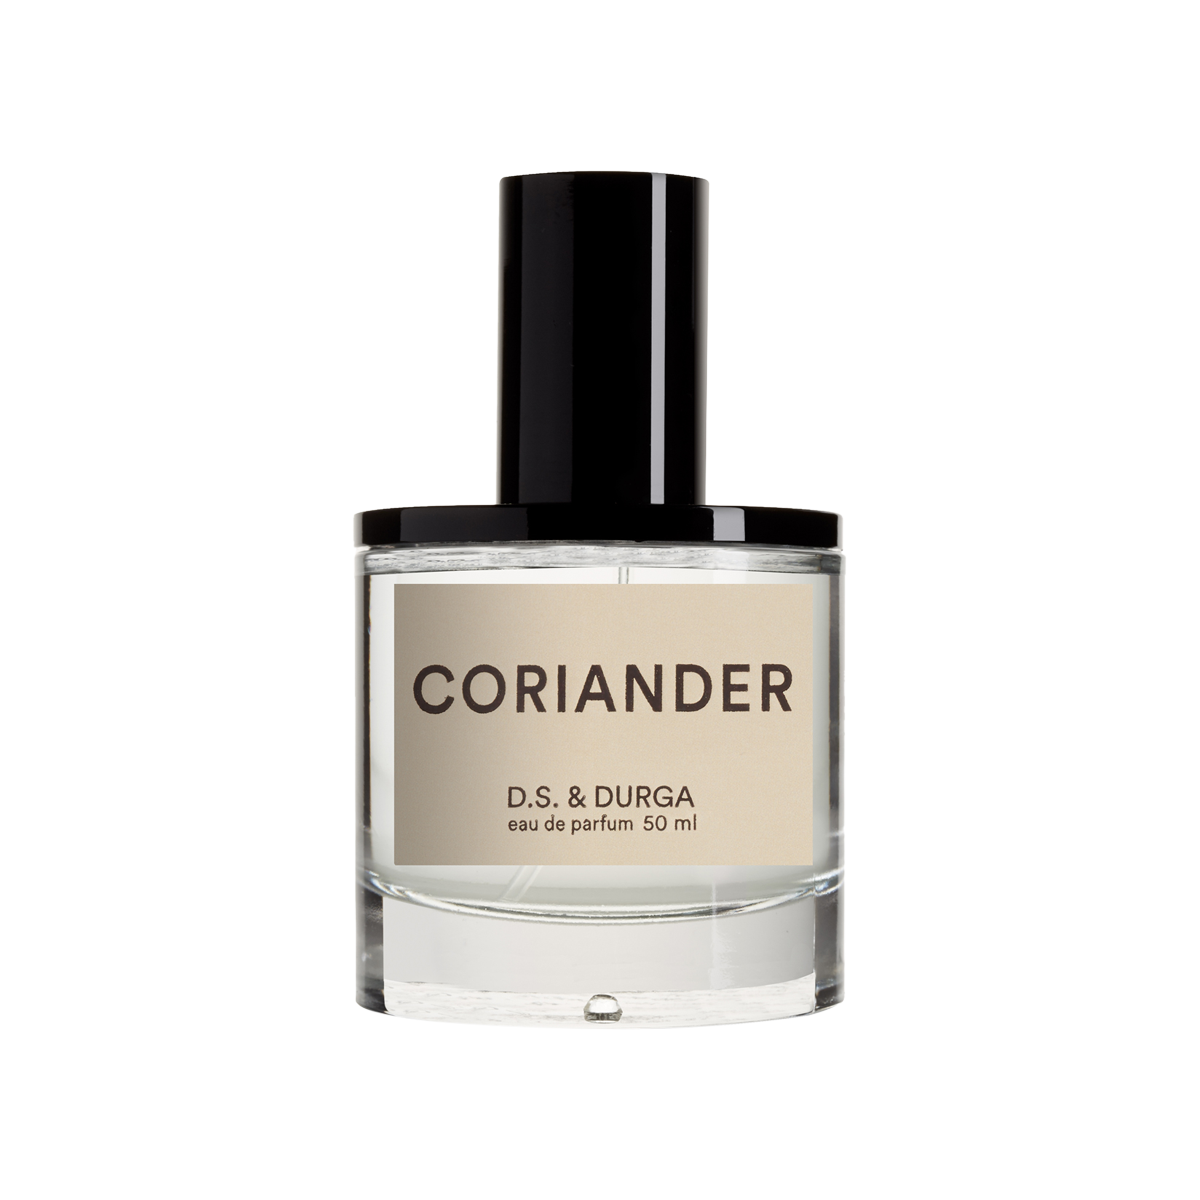 D.S. & DURGA - Coriander Eau de Parfum